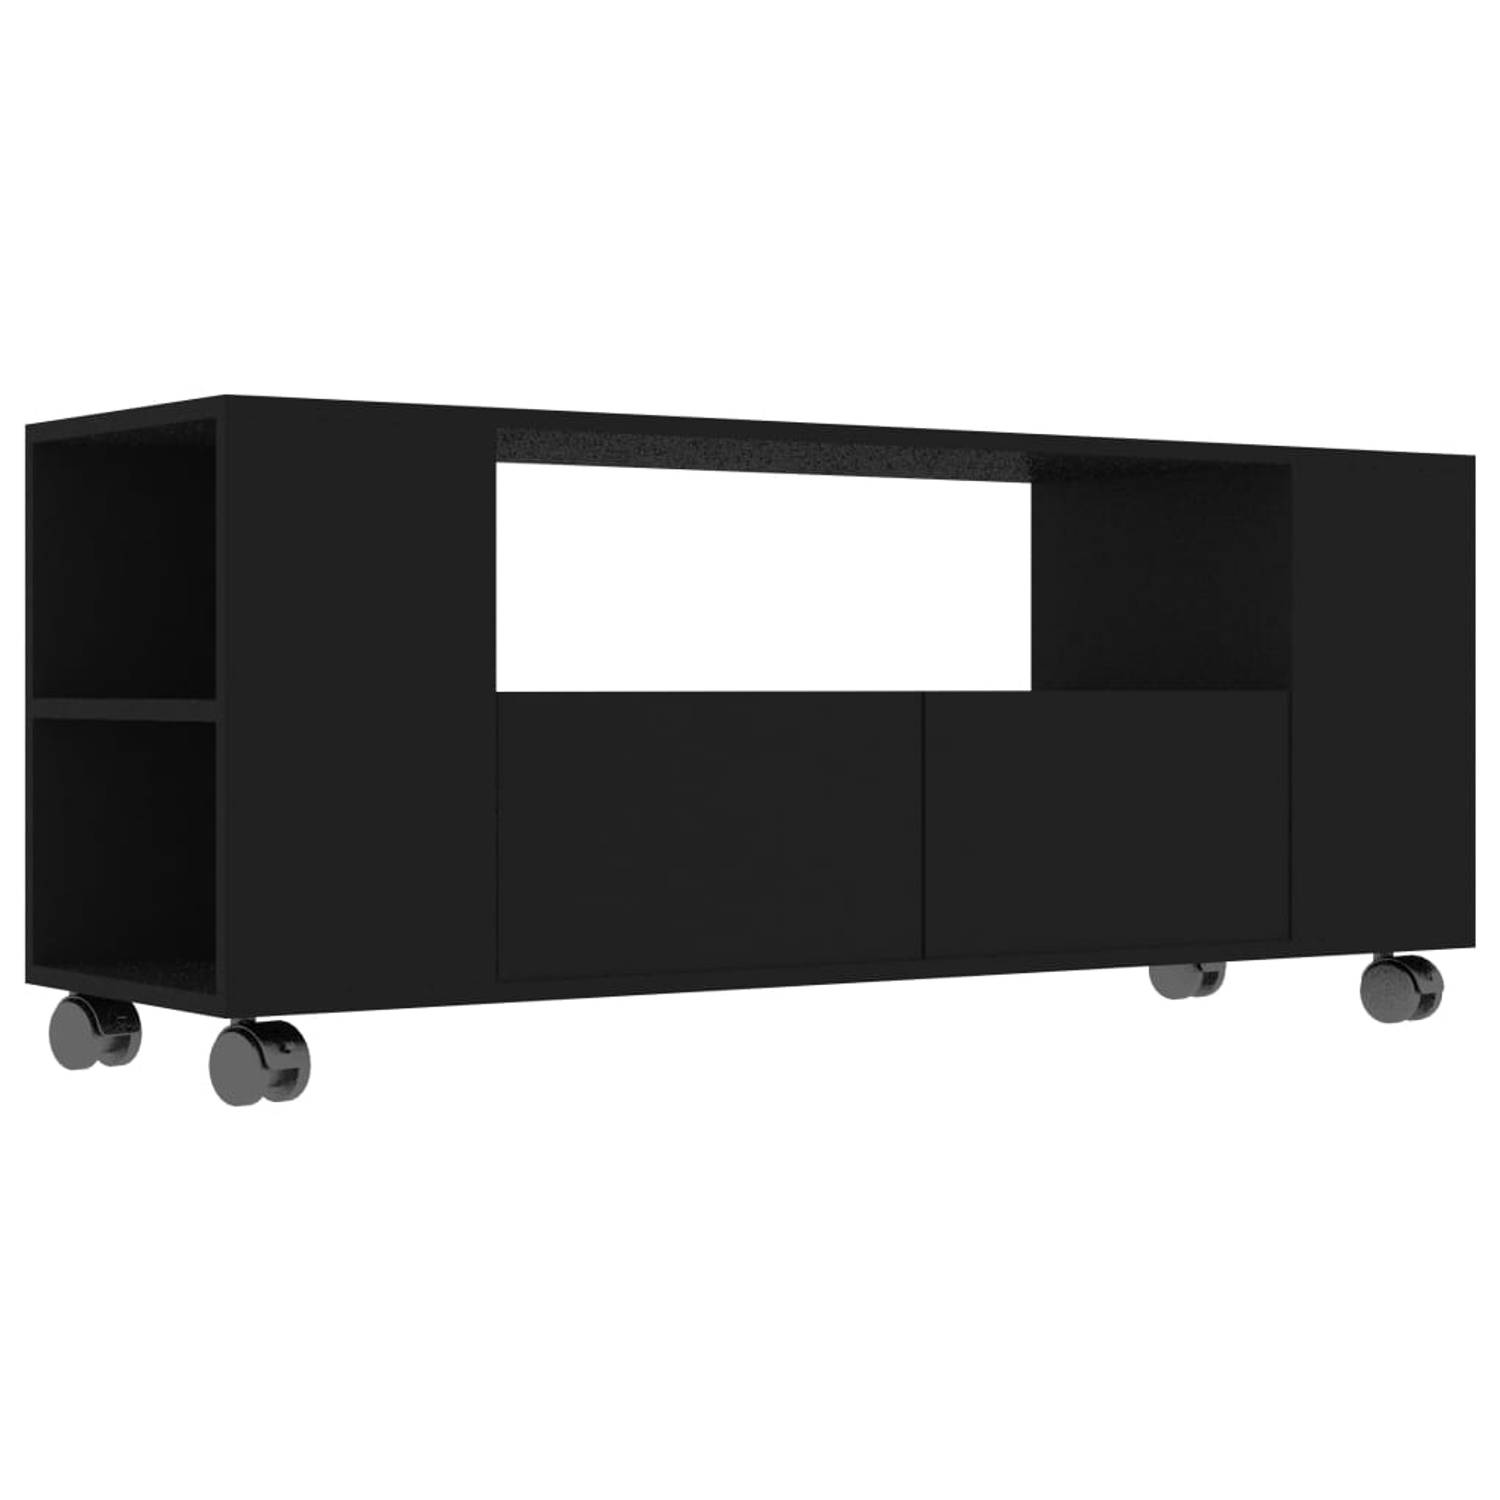 The Living Store TV-meubel - klassiek design - zwart - 120 x 35 x 48 cm - met lades en zijvakken